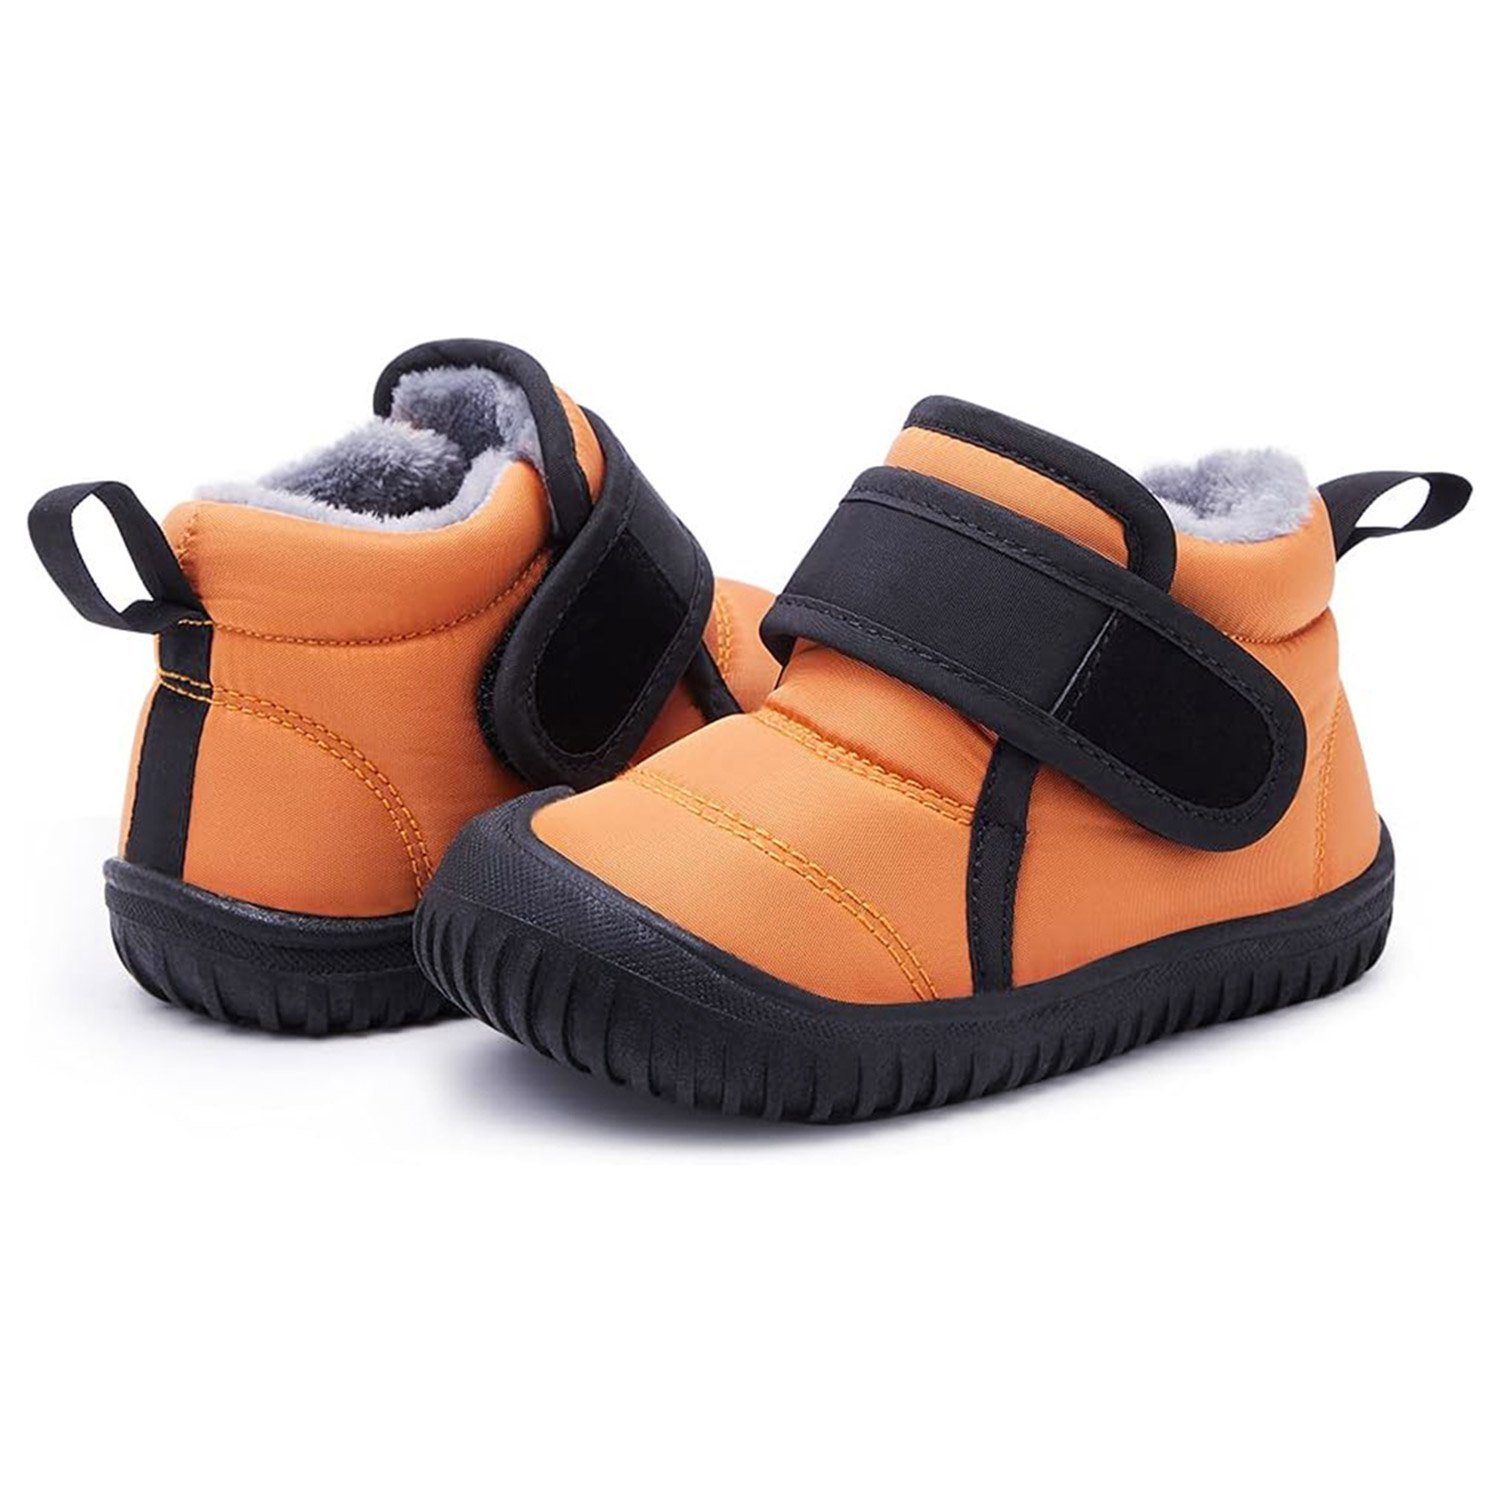 Daisred Leichte Kinderschuhe Warme Boots Bequem Stiefel Orange